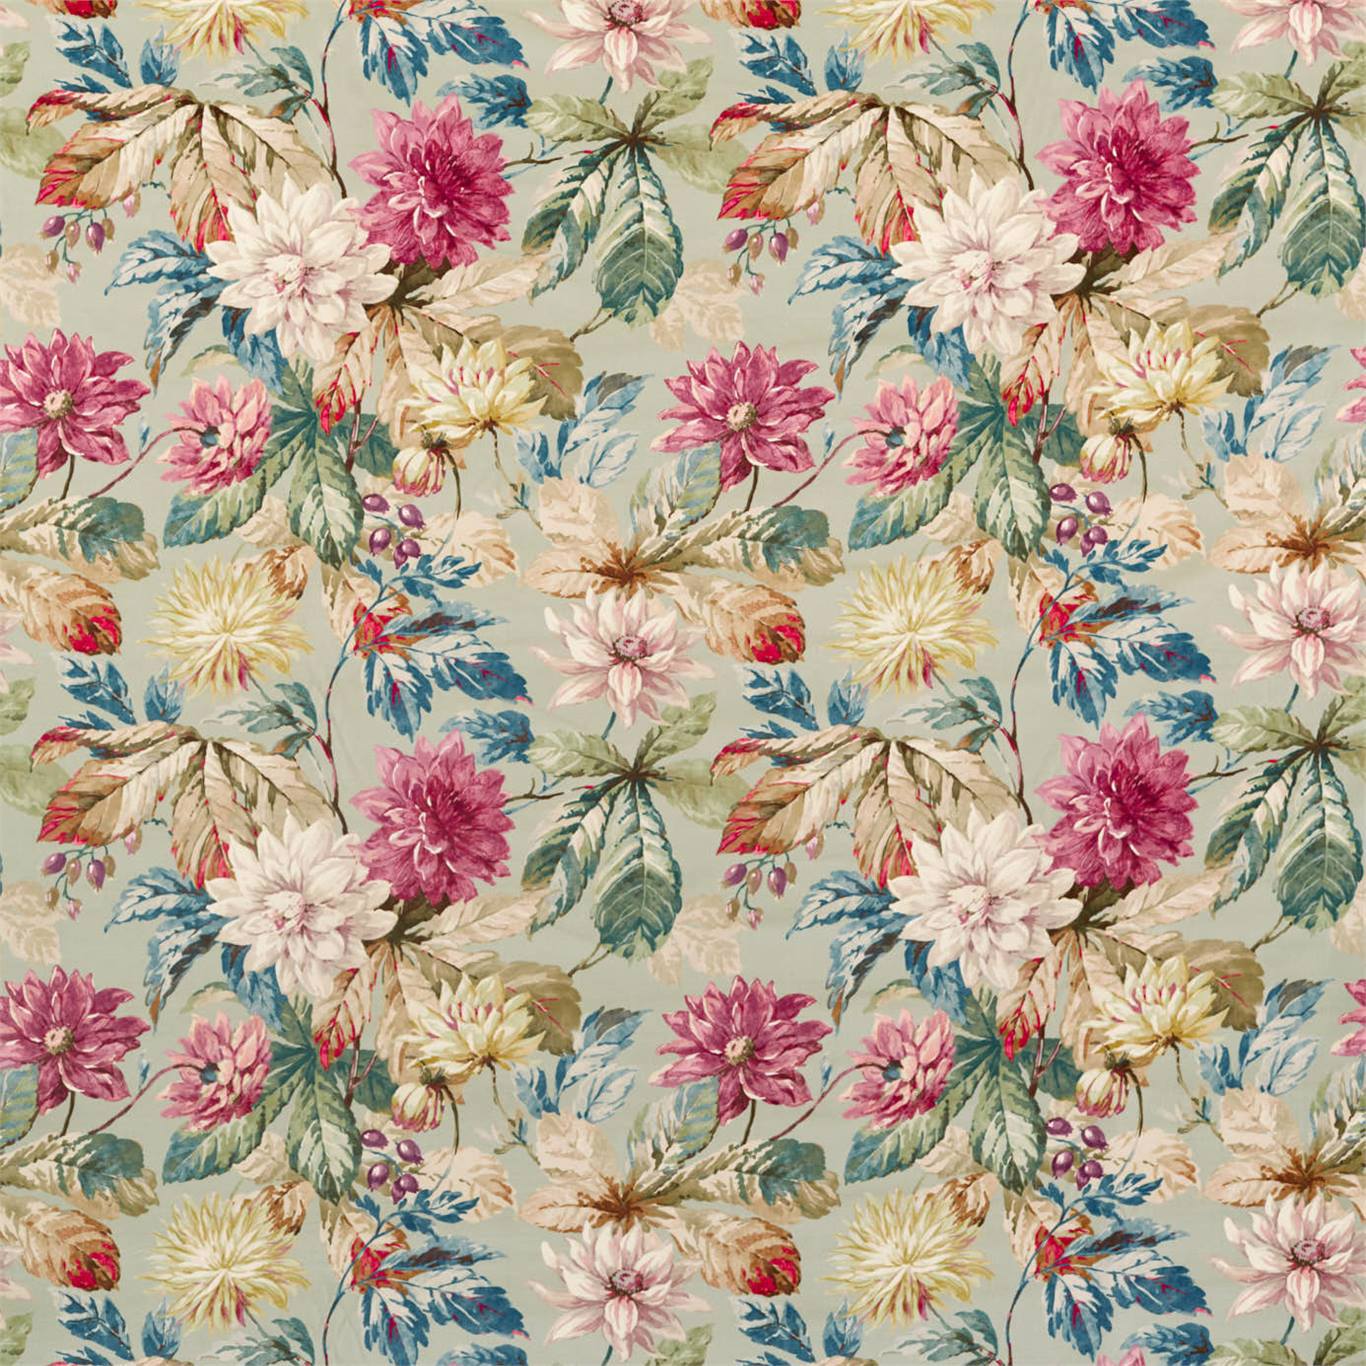 Dahlia & Rosehip Velvet Fabric by Sanderson - DYSI226532 - Mulberry/Grey (Velvet)